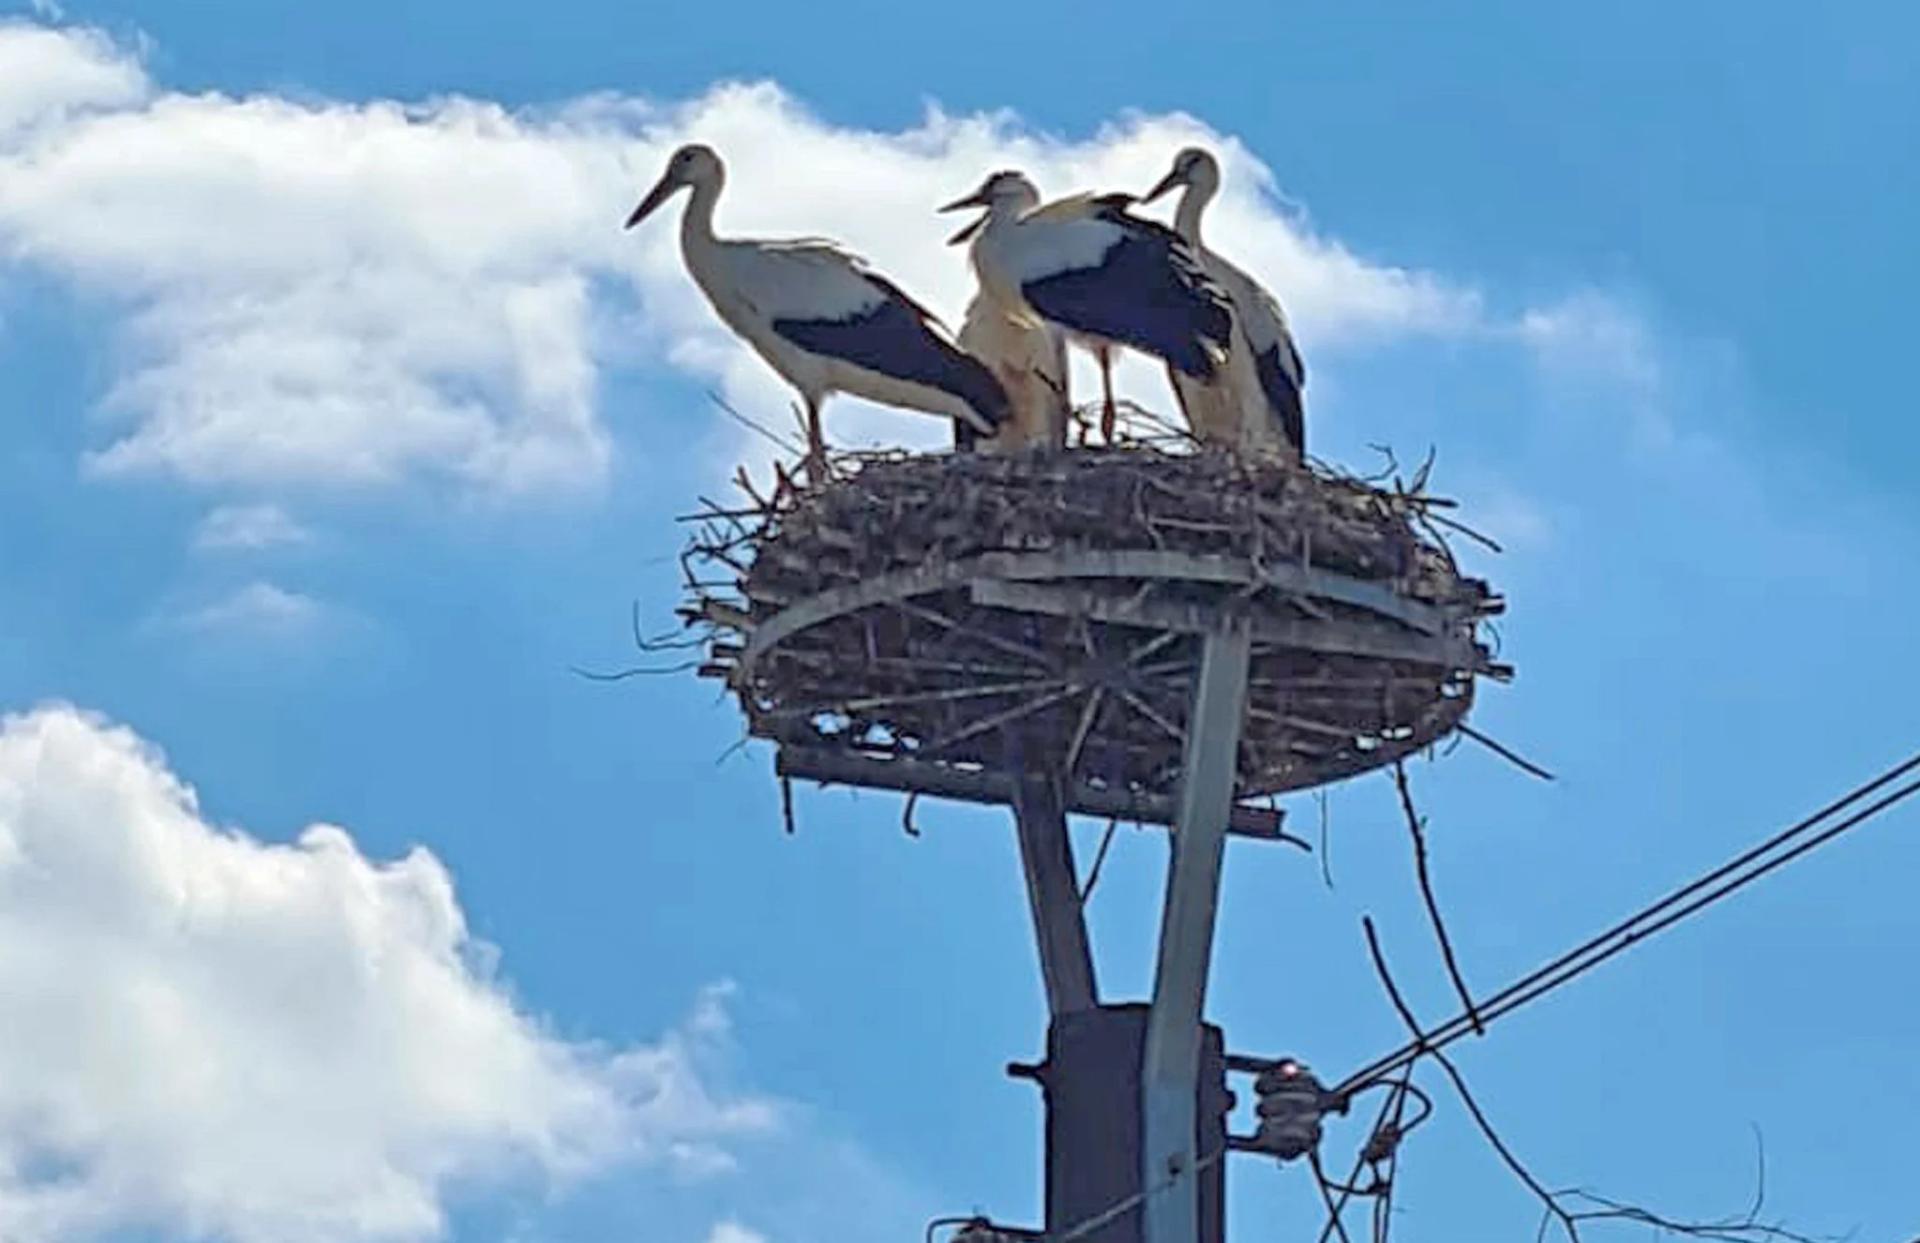 Das Nest der Adebars schaut nun schmuck aus – und im ersten Jahr seiner tatsächlichen Nutzung hatte sich auch prompt Nachwuchs eingestellt. Fotos: M. Zielinski